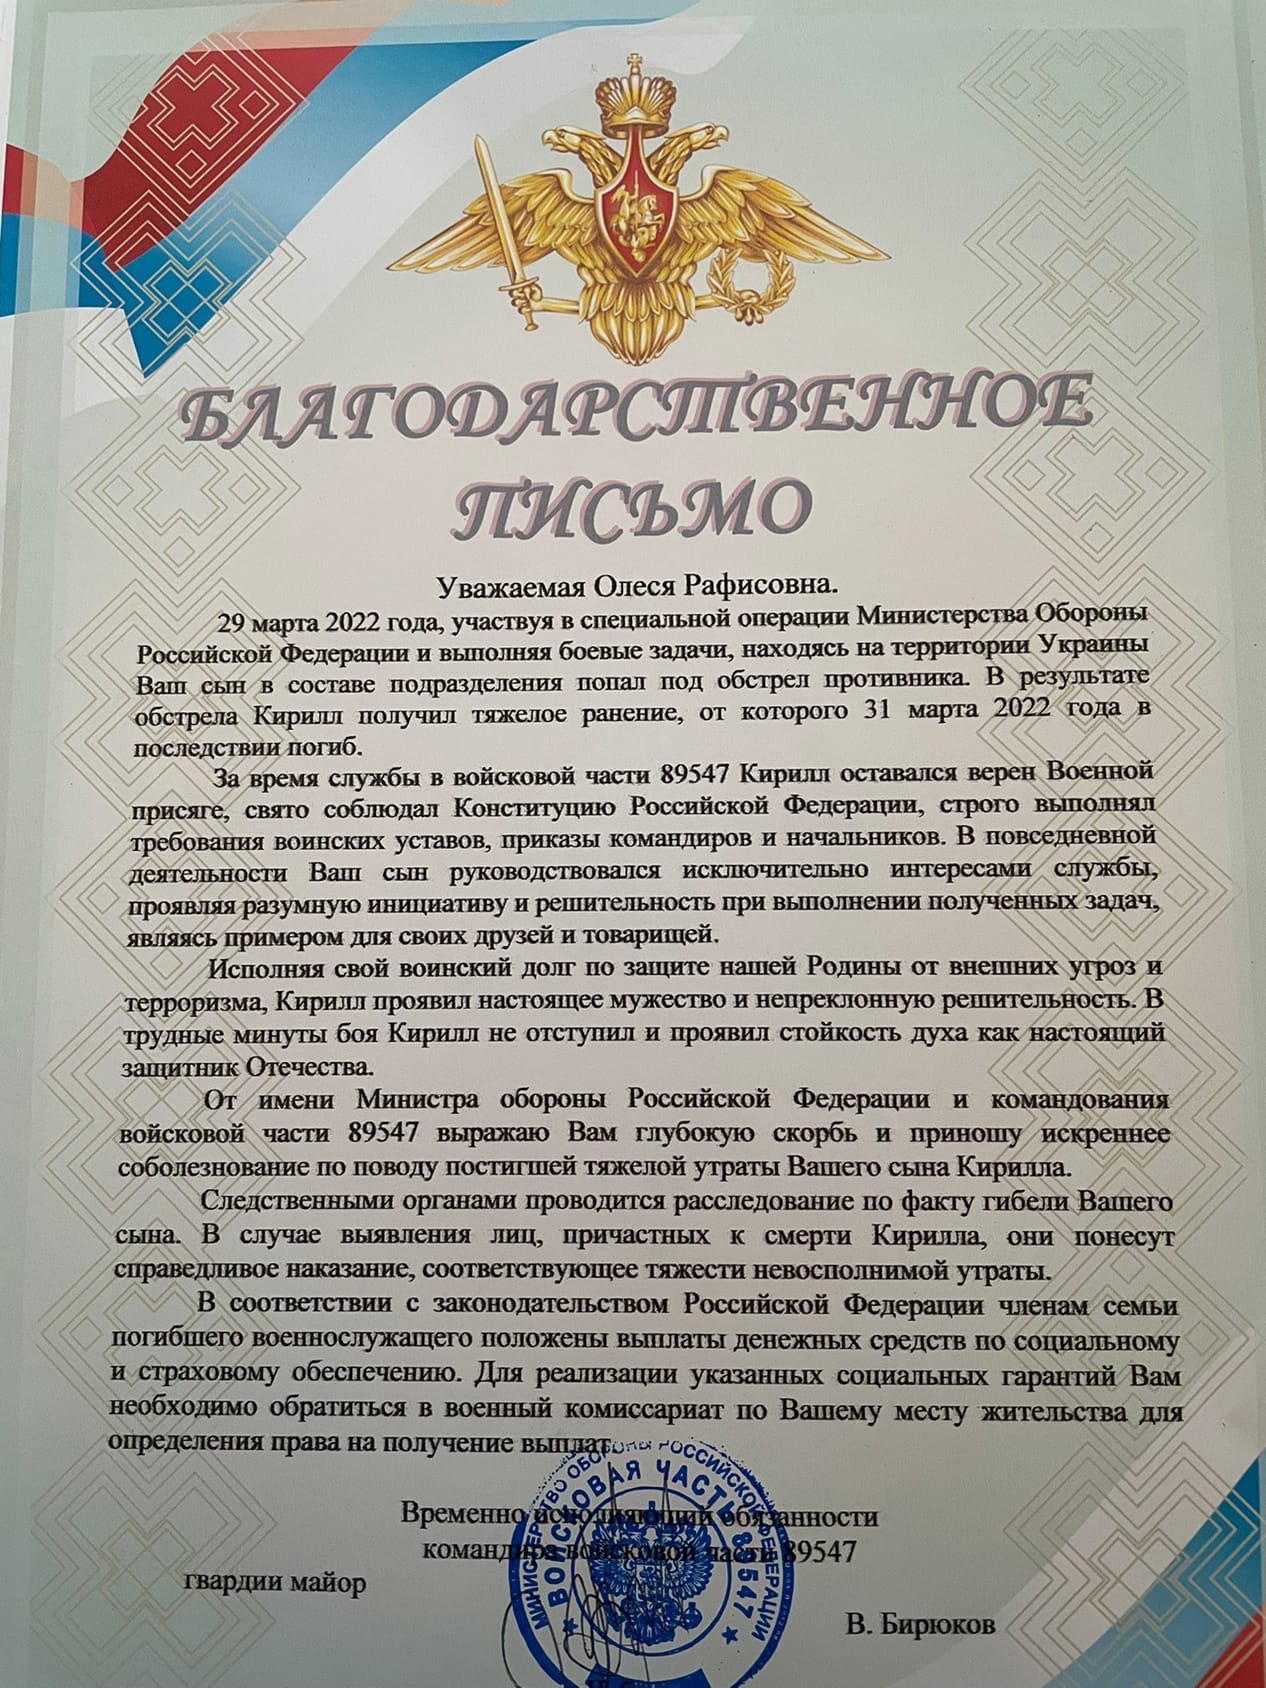 Мама солдата получила такое благодарственное письмо от врио командира войсковой части в Чебаркуле